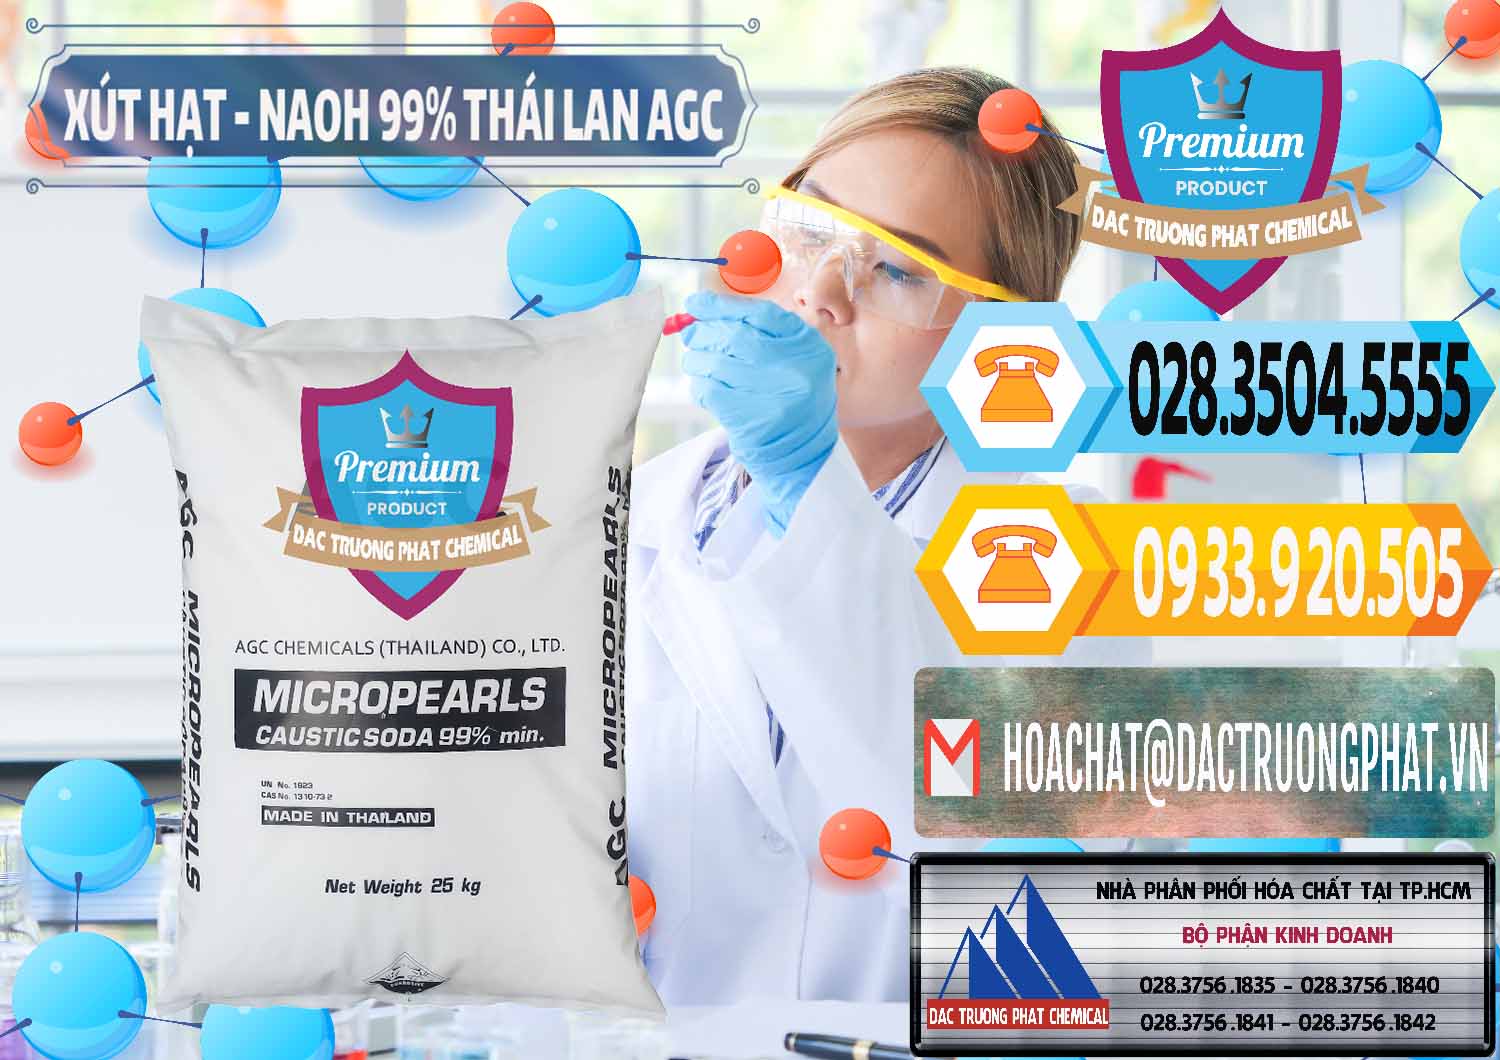 Chuyên kinh doanh ( bán ) Xút Hạt - NaOH Bột 99% AGC Thái Lan - 0168 - Công ty chuyên cung ứng _ phân phối hóa chất tại TP.HCM - hoachattayrua.net